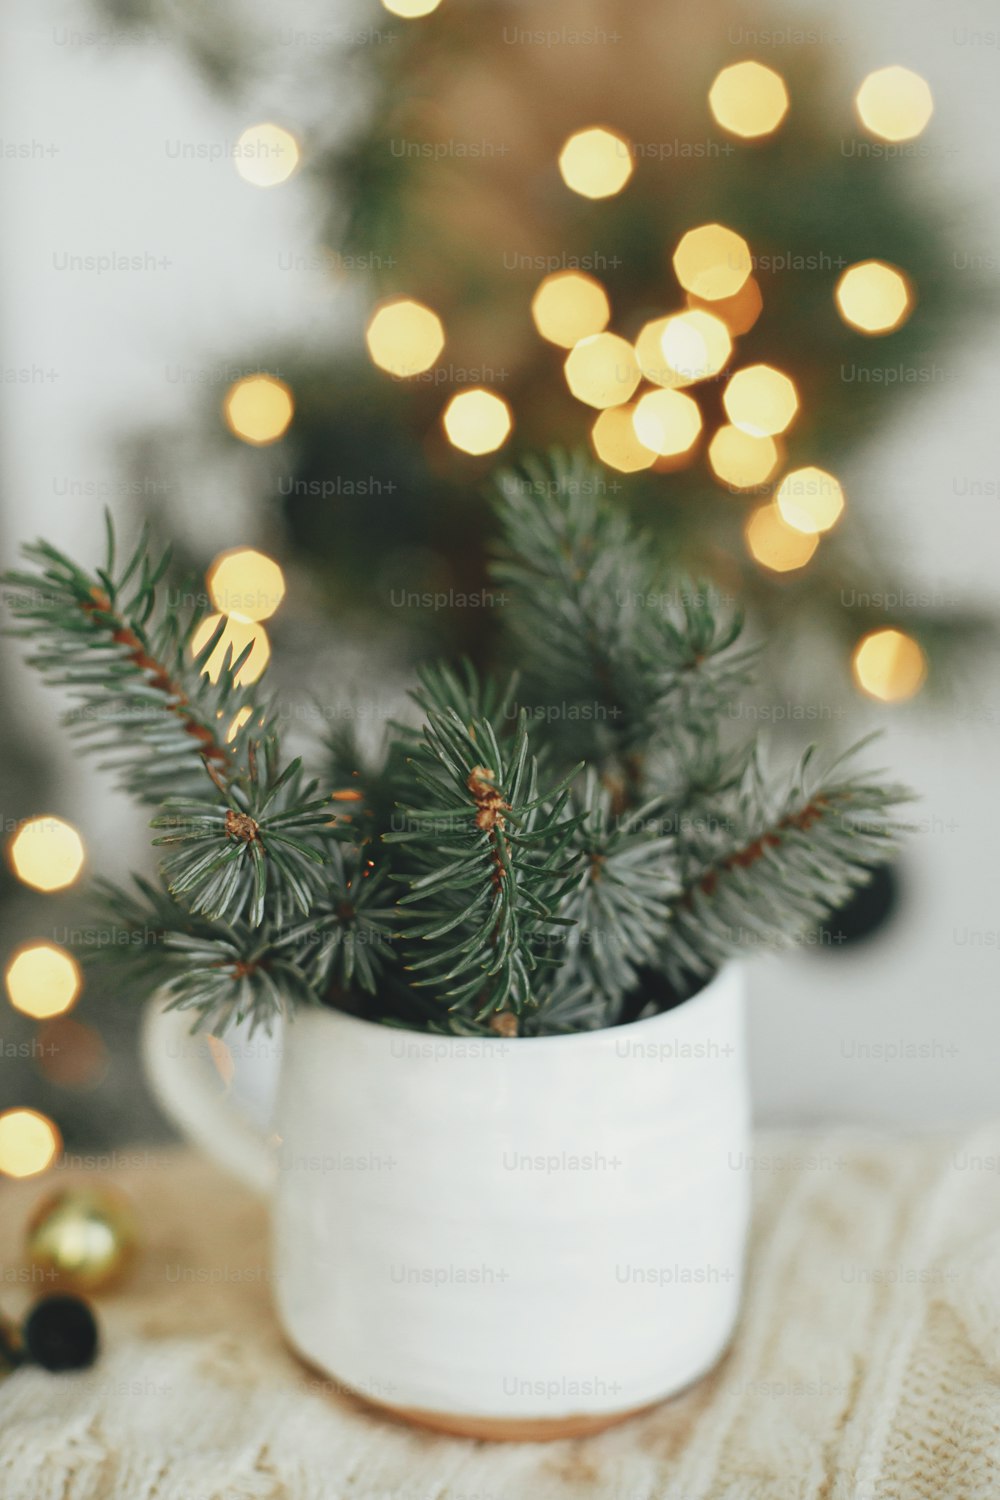 Casa hygge atmosférica. ¡Feliz Navidad! Elegante taza con ramas de abeto sobre suéter acogedor sobre fondo de luces cálidas en una habitación escandinava festiva. Mágico horario de invierno. ¡Felices Fiestas!